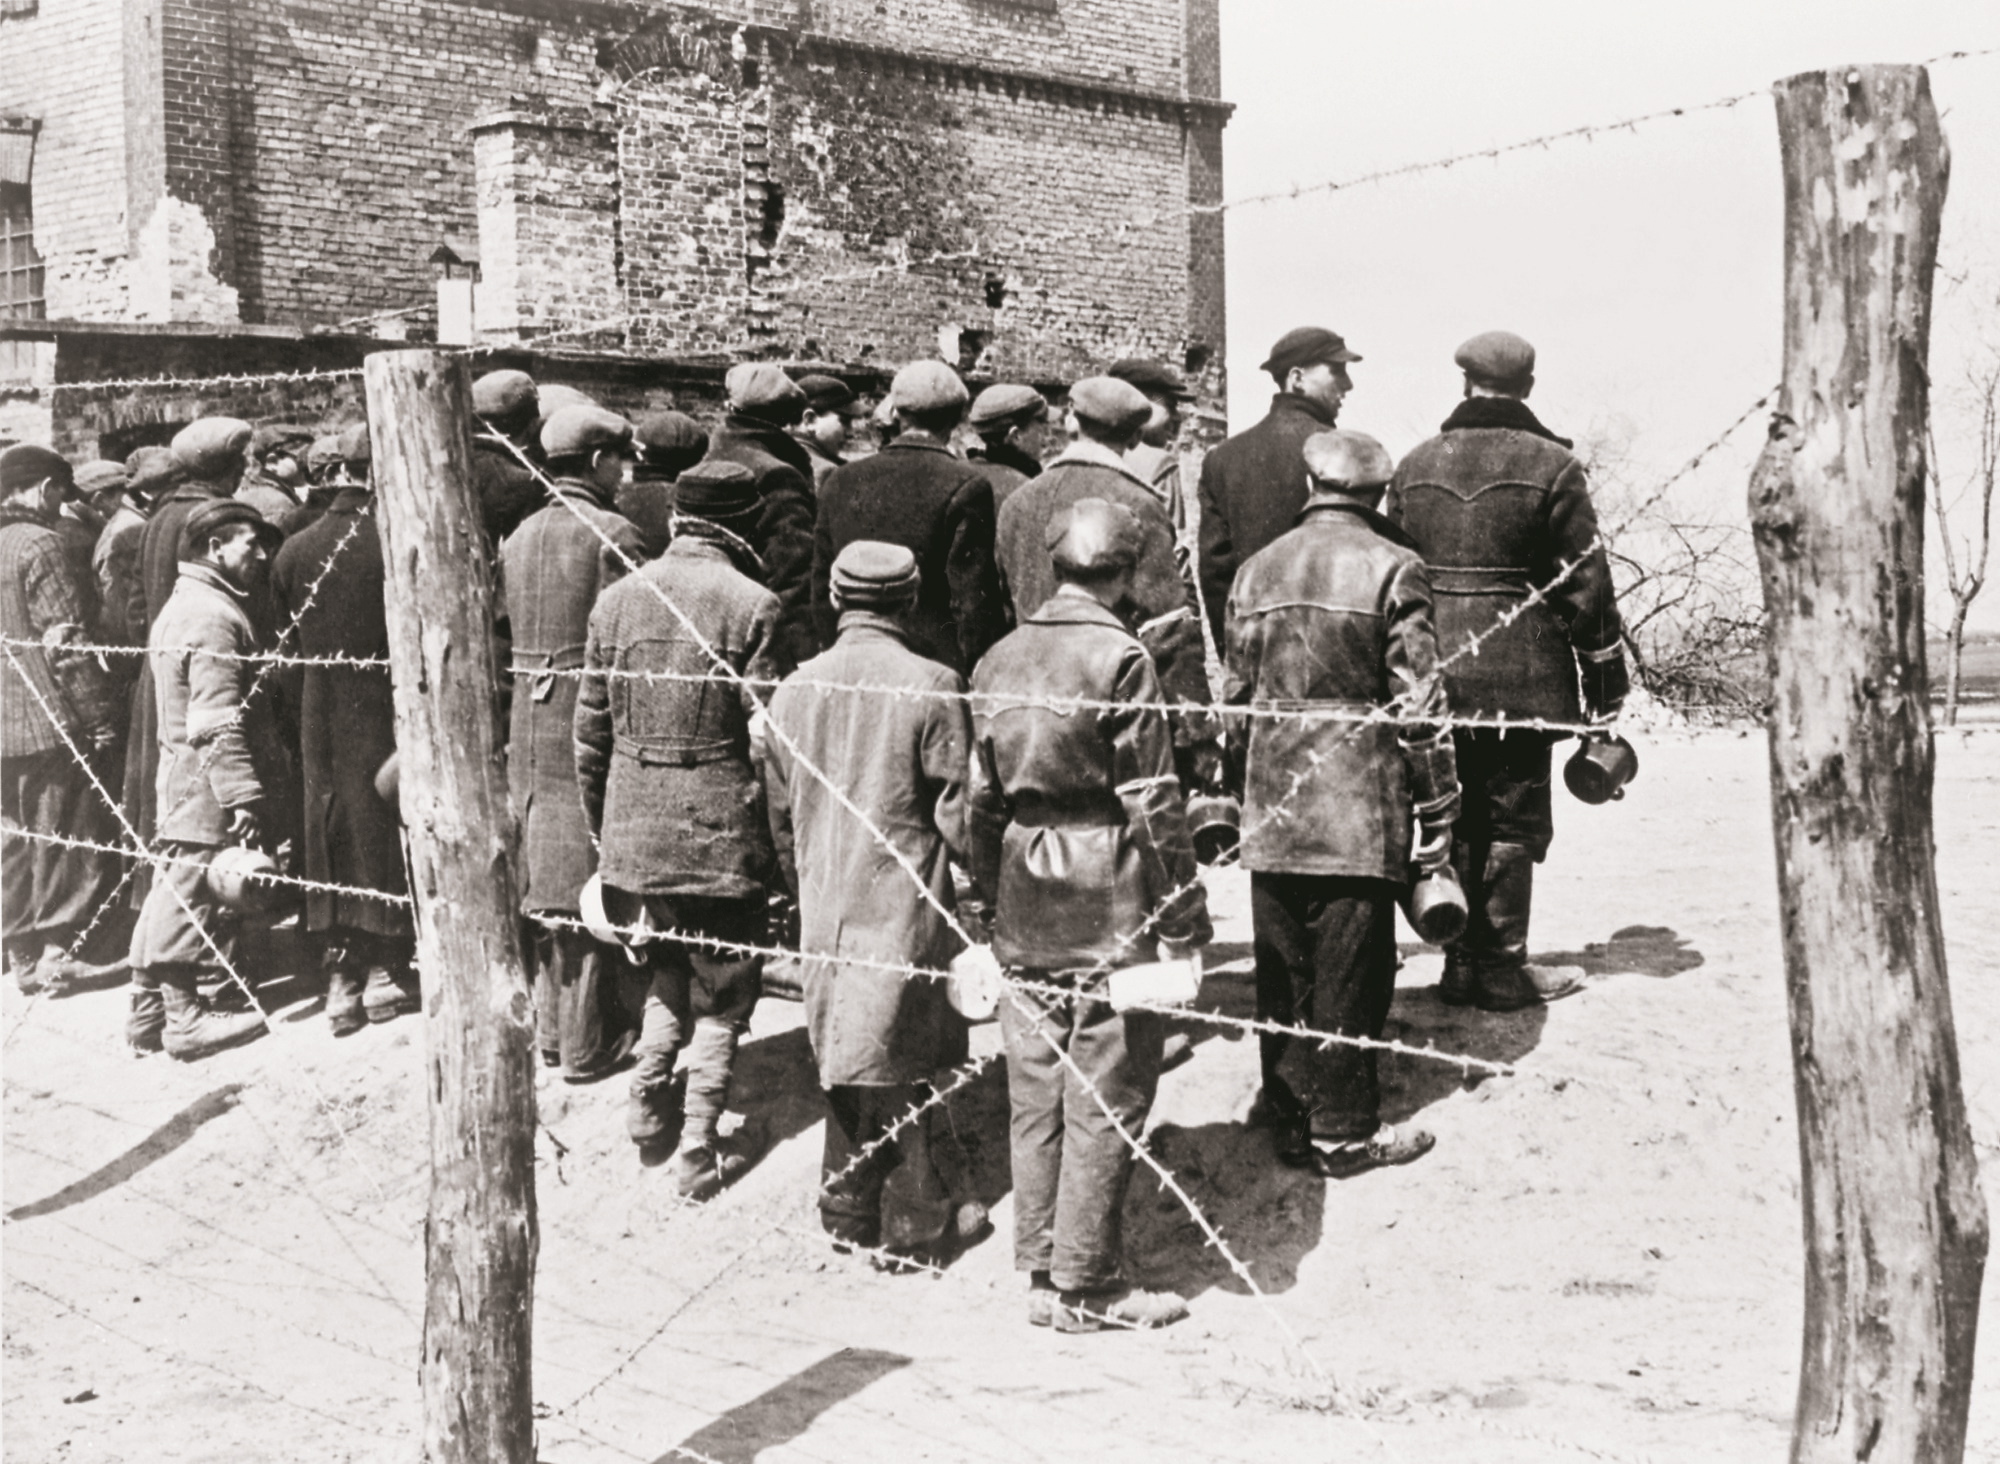 Żydzi z getta pracujący nad Wisłą, Warszawa, 1941 r.